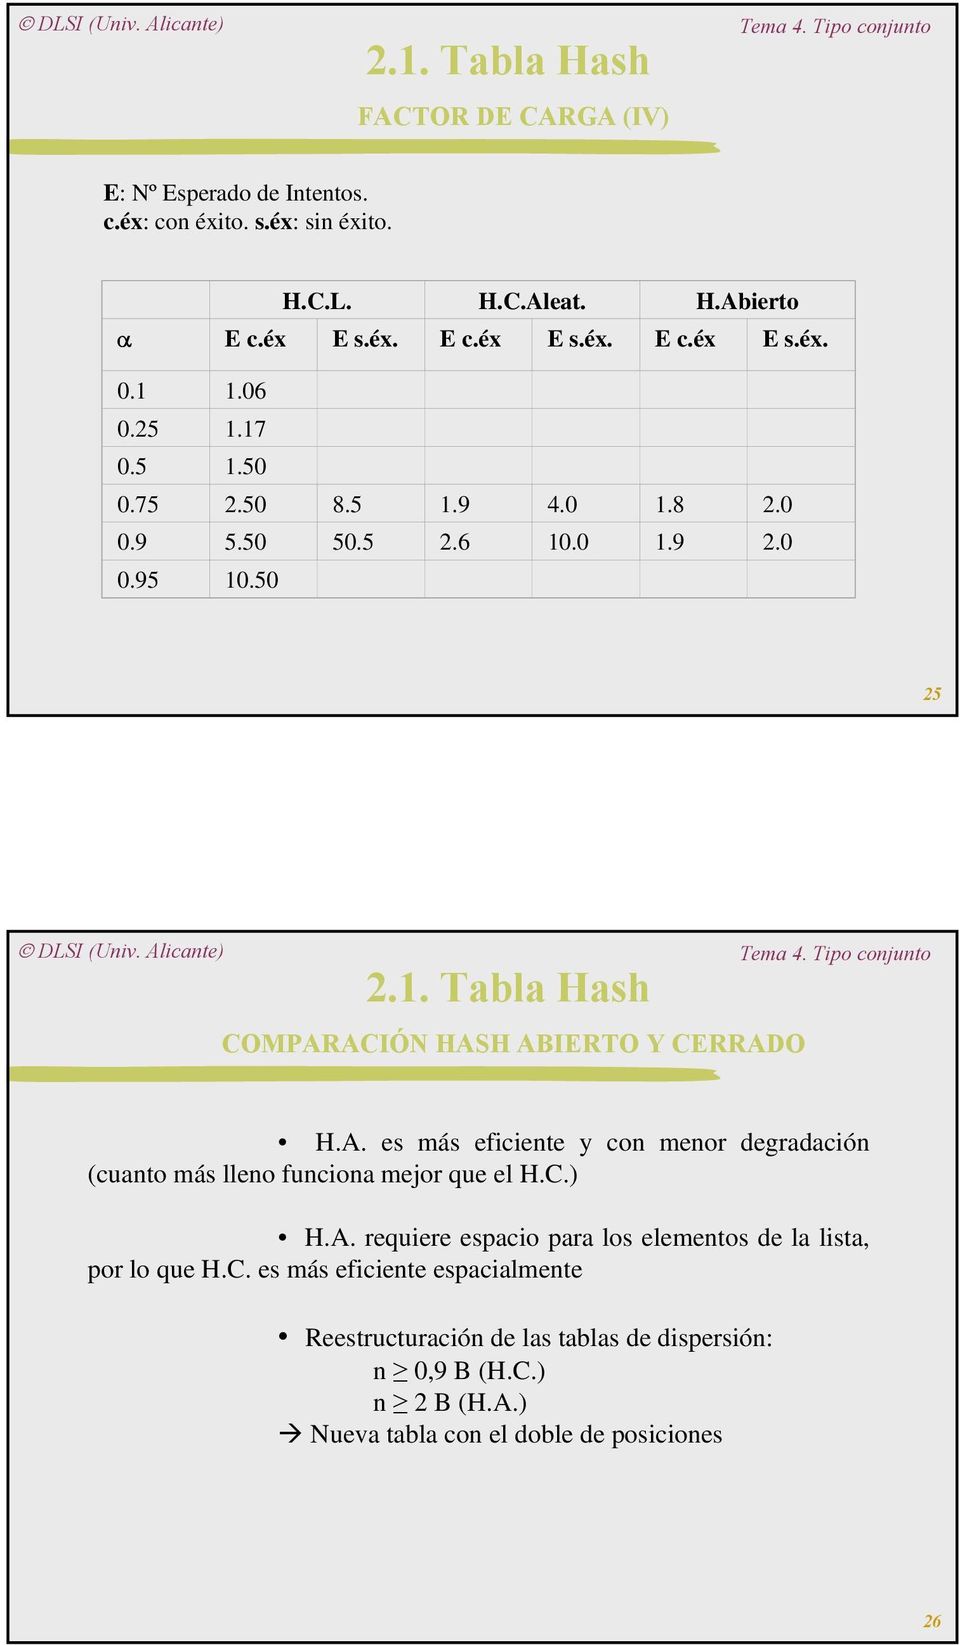 ACIÓN HASH ABIERTO Y CERRADO H.A. es más eficiente y con menor degradación (cuanto más lleno funciona mejor que el H.C.) H.A. requiere espacio para los elementos de la lista, por lo que H.